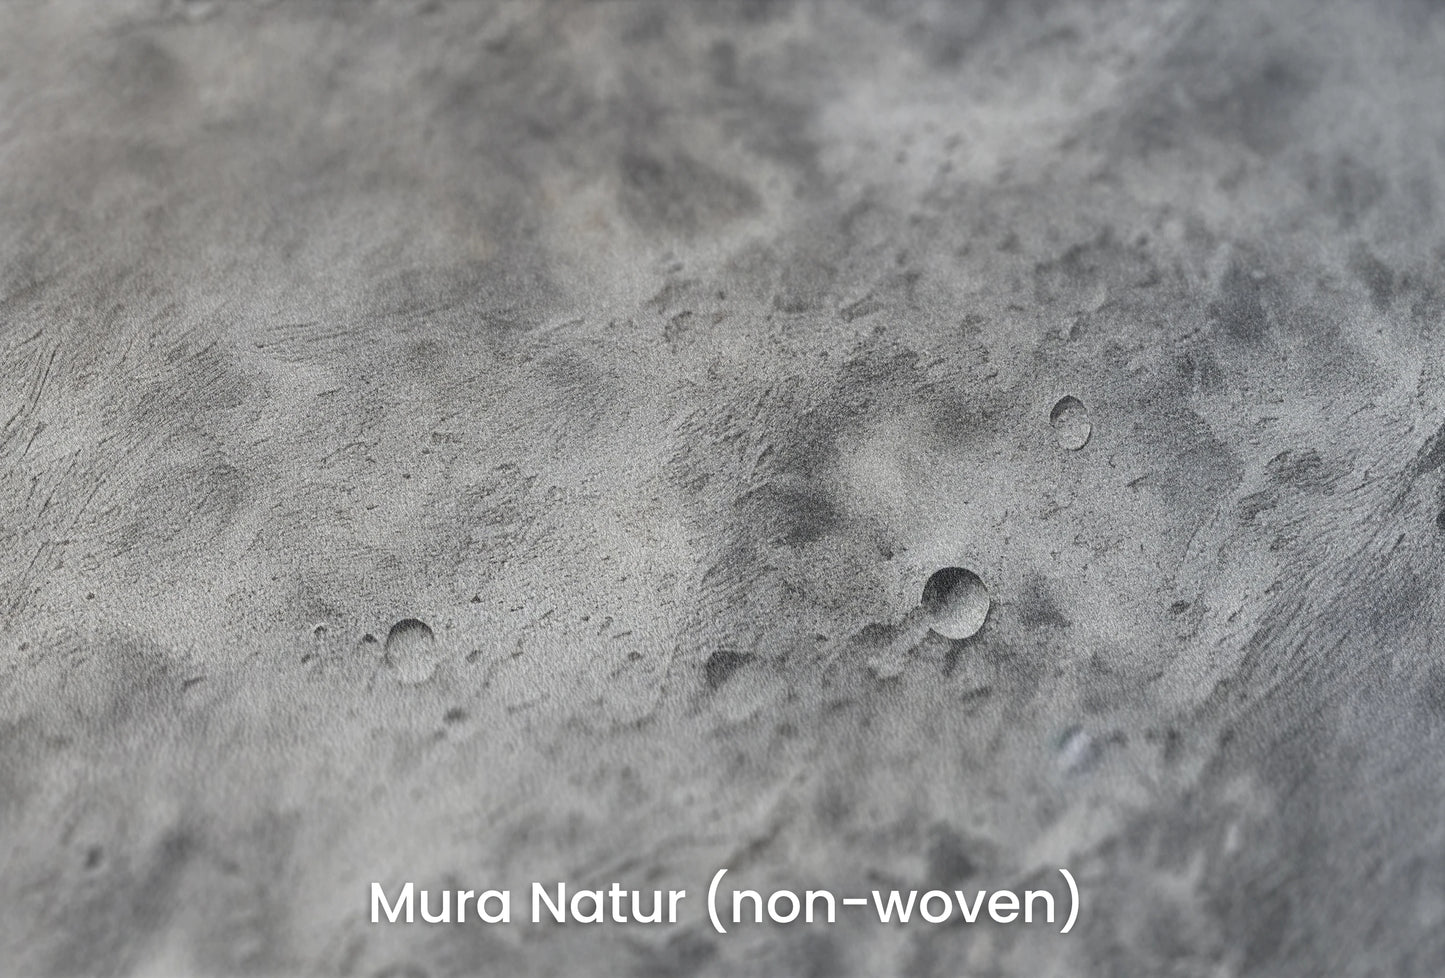 Zbliżenie na artystyczną fototapetę o nazwie Moon's Tranquility #2 na podłożu Mura Natur (non-woven) - naturalne i ekologiczne podłoże.